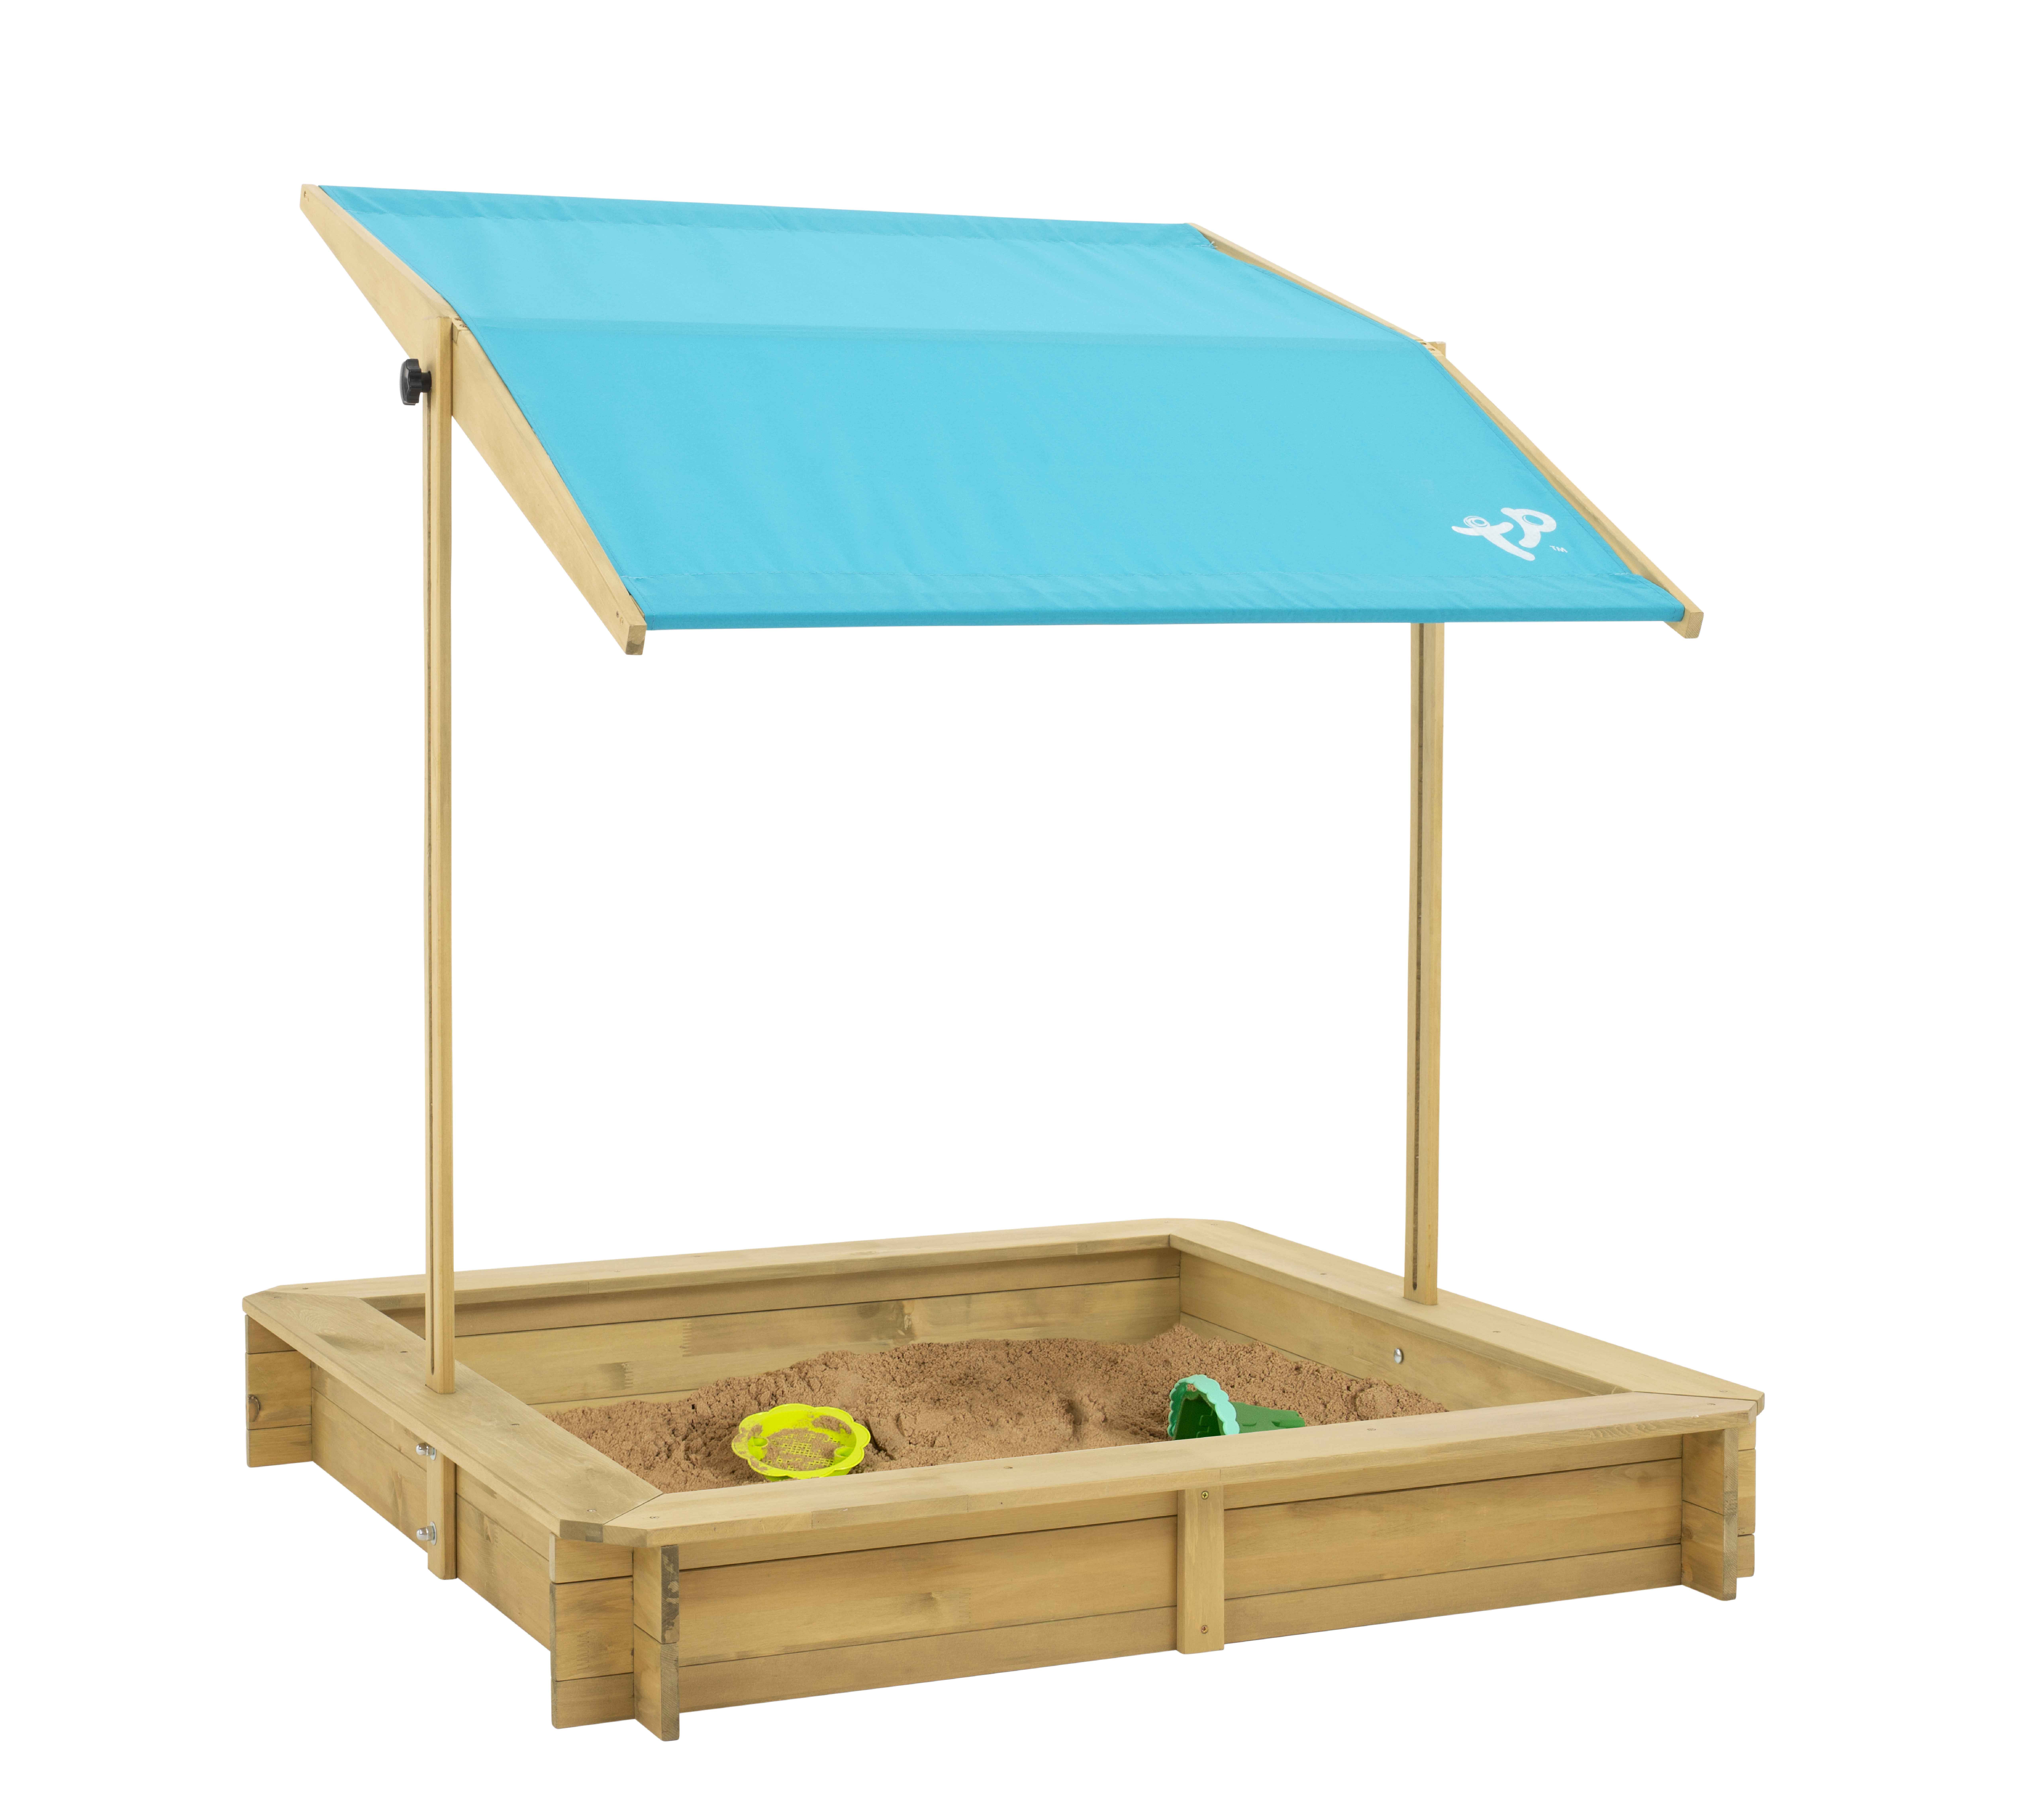 Sandkasten mit Sonnendach | TP Toys | Sandbox Sandkiste mit verstellbaren Dach